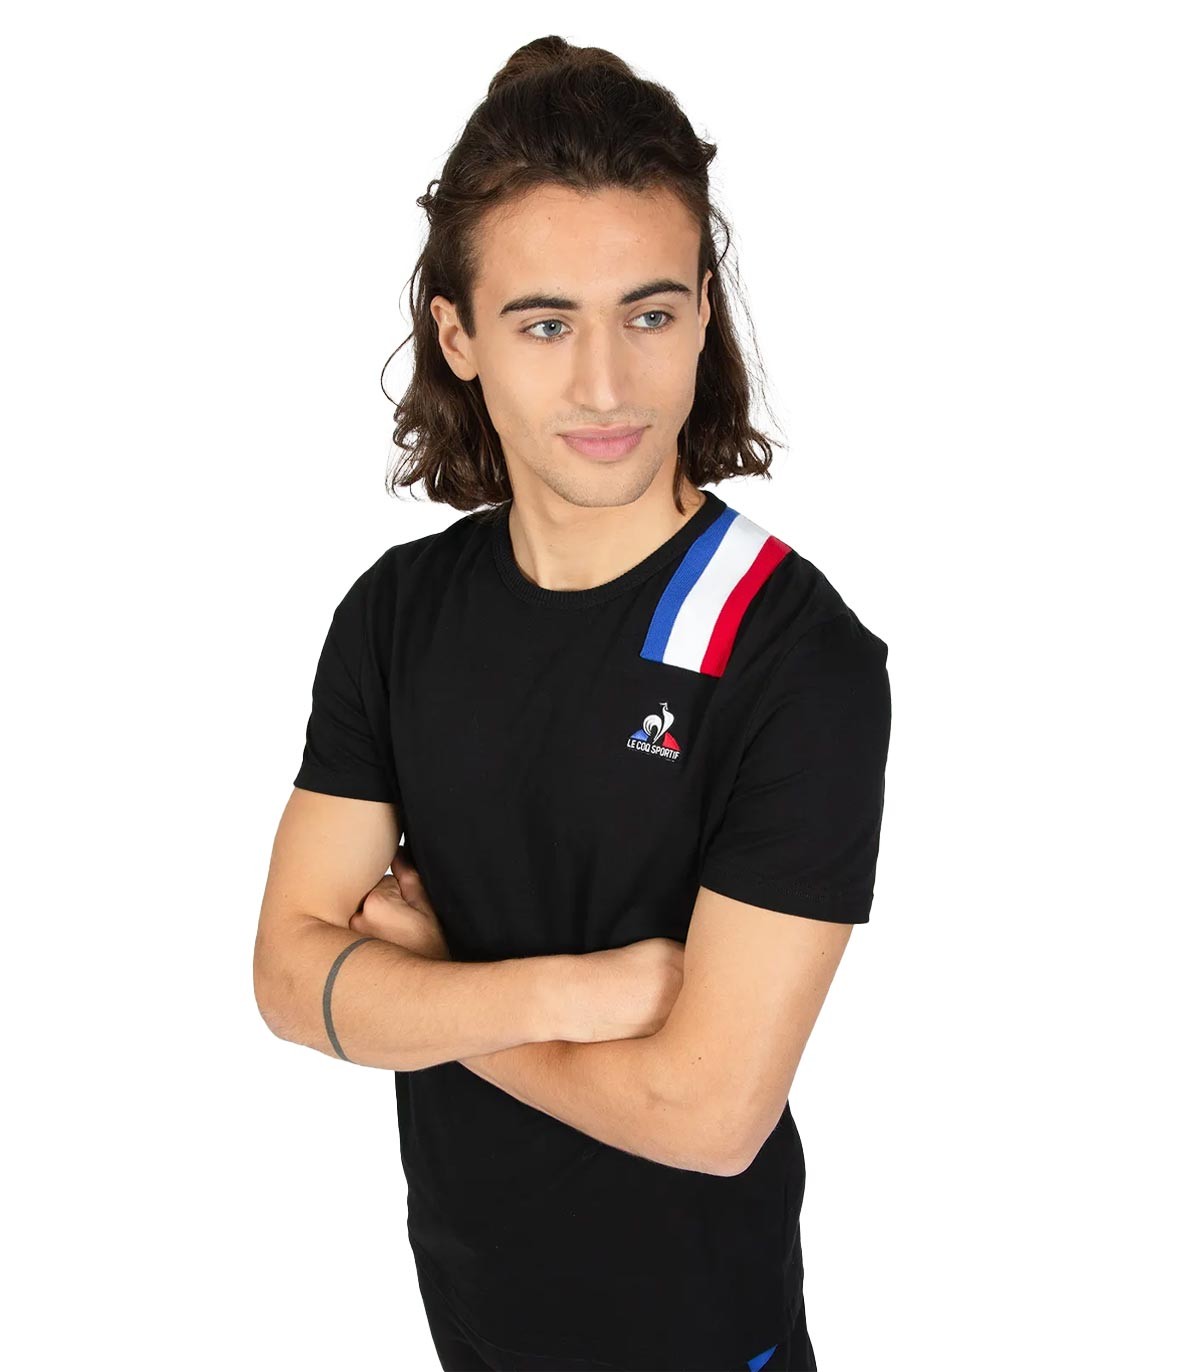 Le Coq Sportif - Camiseta Unisex Tricolore-Negro - Negro